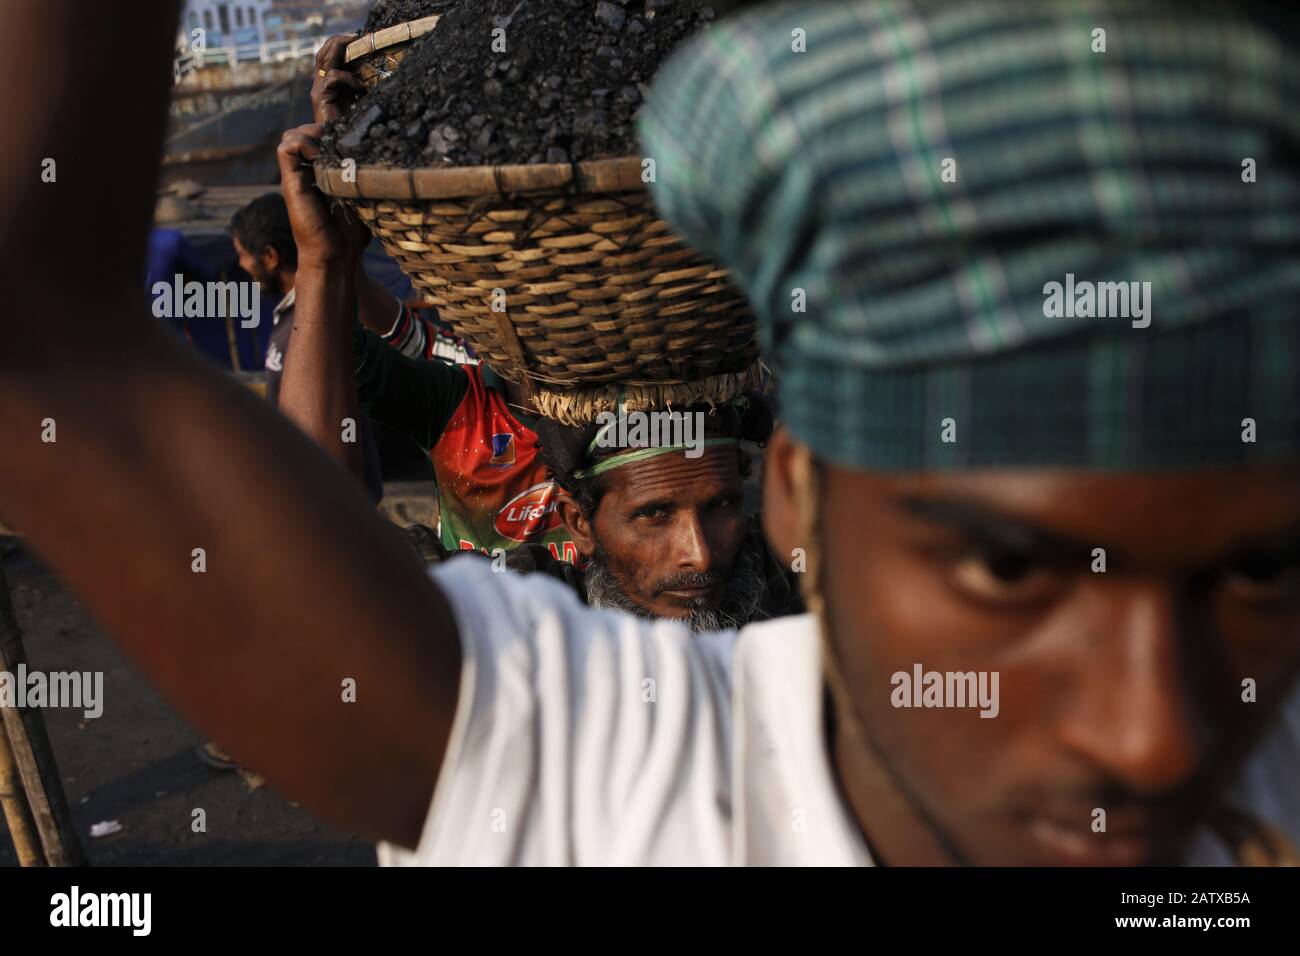 Dhaka, Bangladesh. 5 février 2020. Les ouvriers déchargent le charbon d'une barge dans un panier sur leur tête à la rive de la rivière Turag. Crédit: Md Mehedi Hasan/Zuma Wire/Alay Live News Banque D'Images